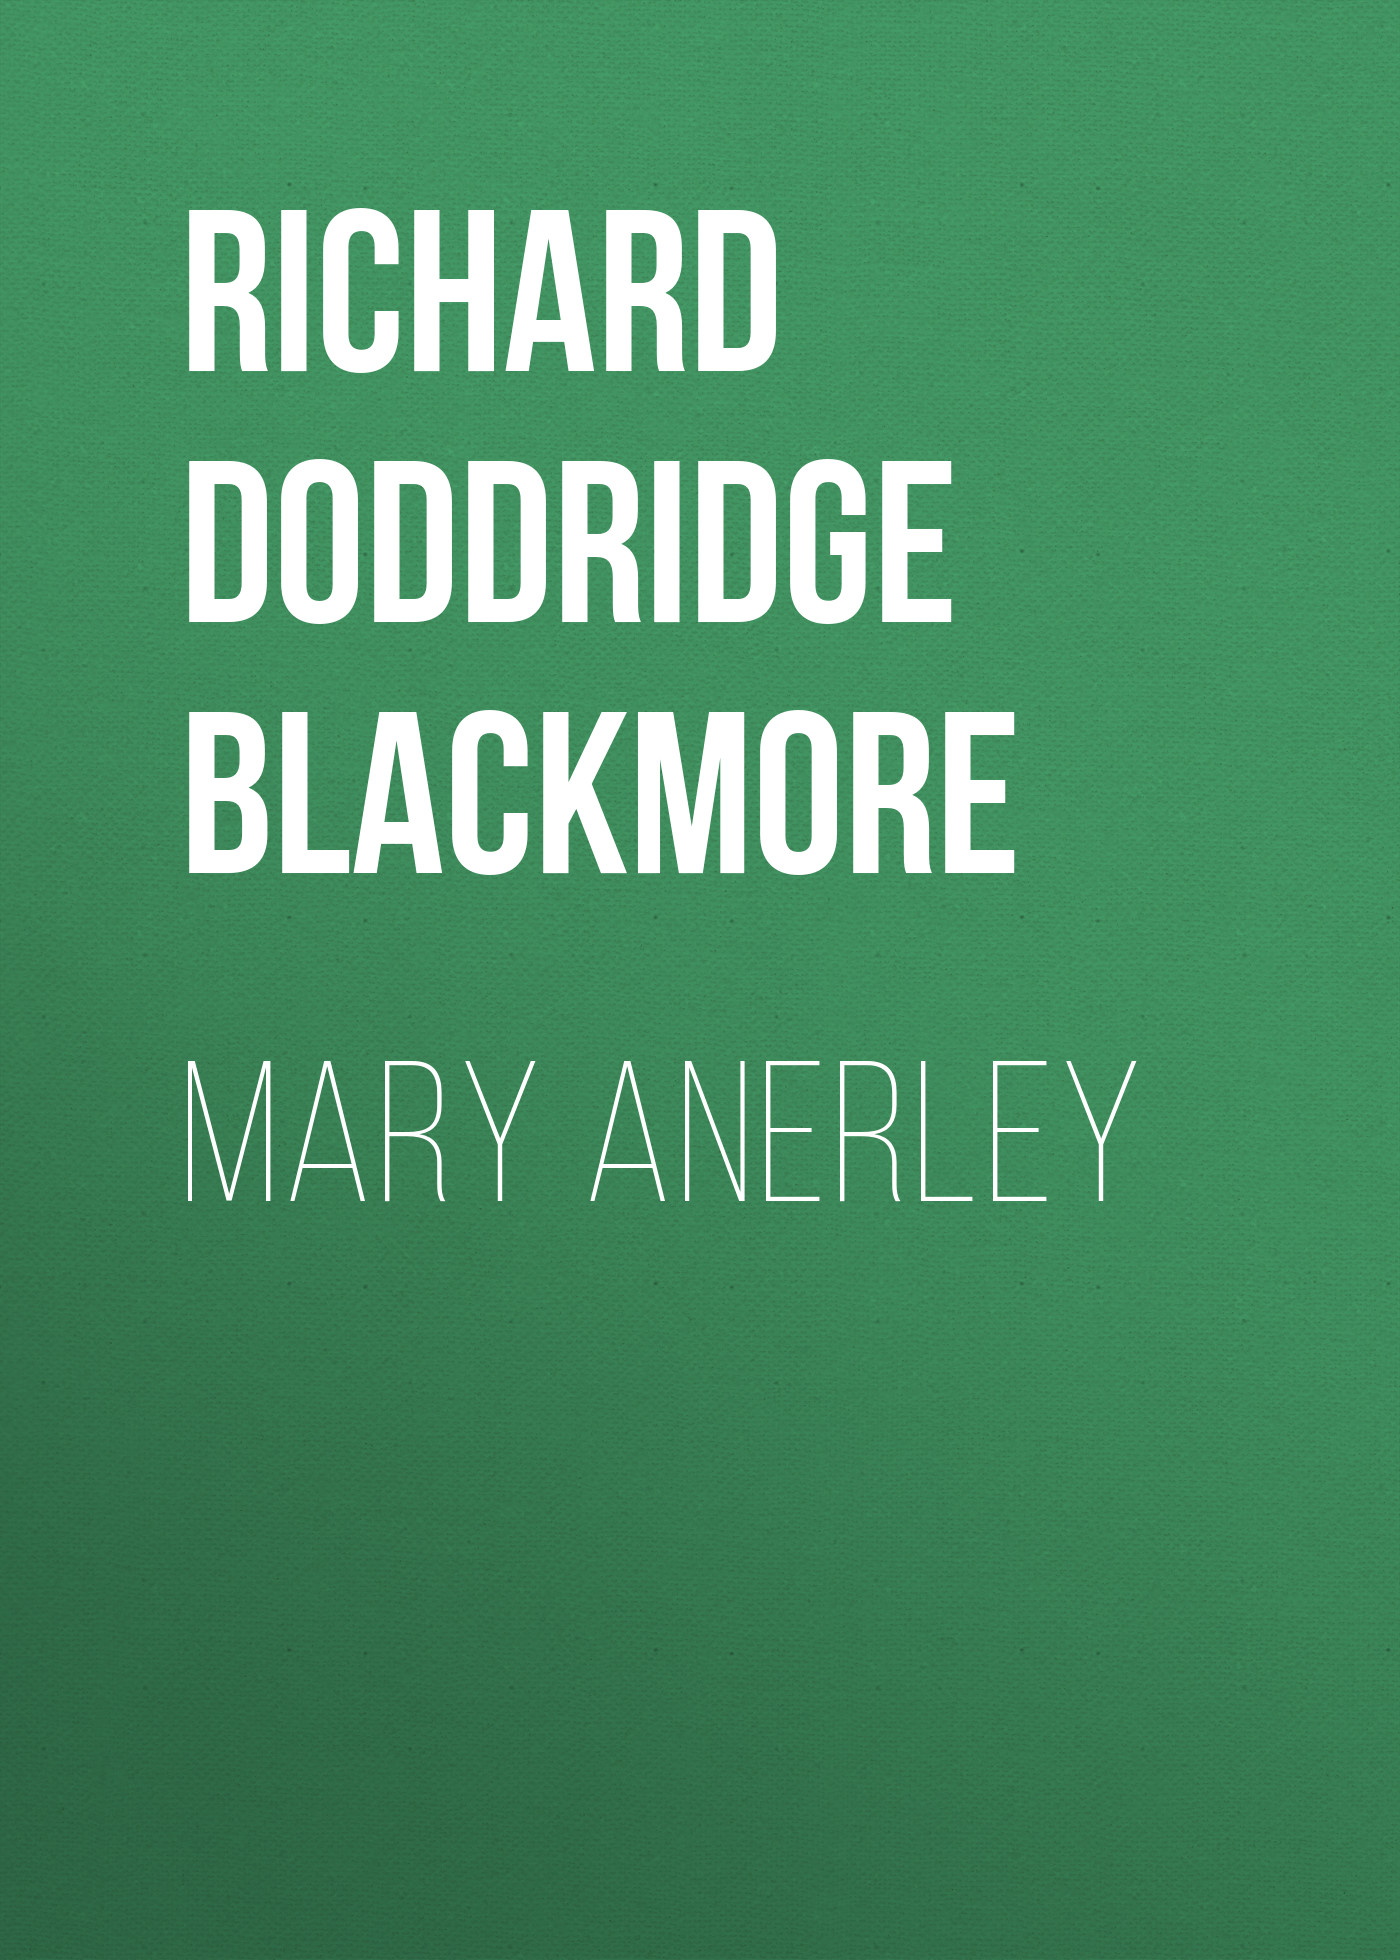 Книга Mary Anerley из серии , созданная Richard Doddridge Blackmore, может относится к жанру Сказки, Литература 19 века, Зарубежная старинная литература, Зарубежная классика. Стоимость электронной книги Mary Anerley с идентификатором 36095549 составляет 0 руб.